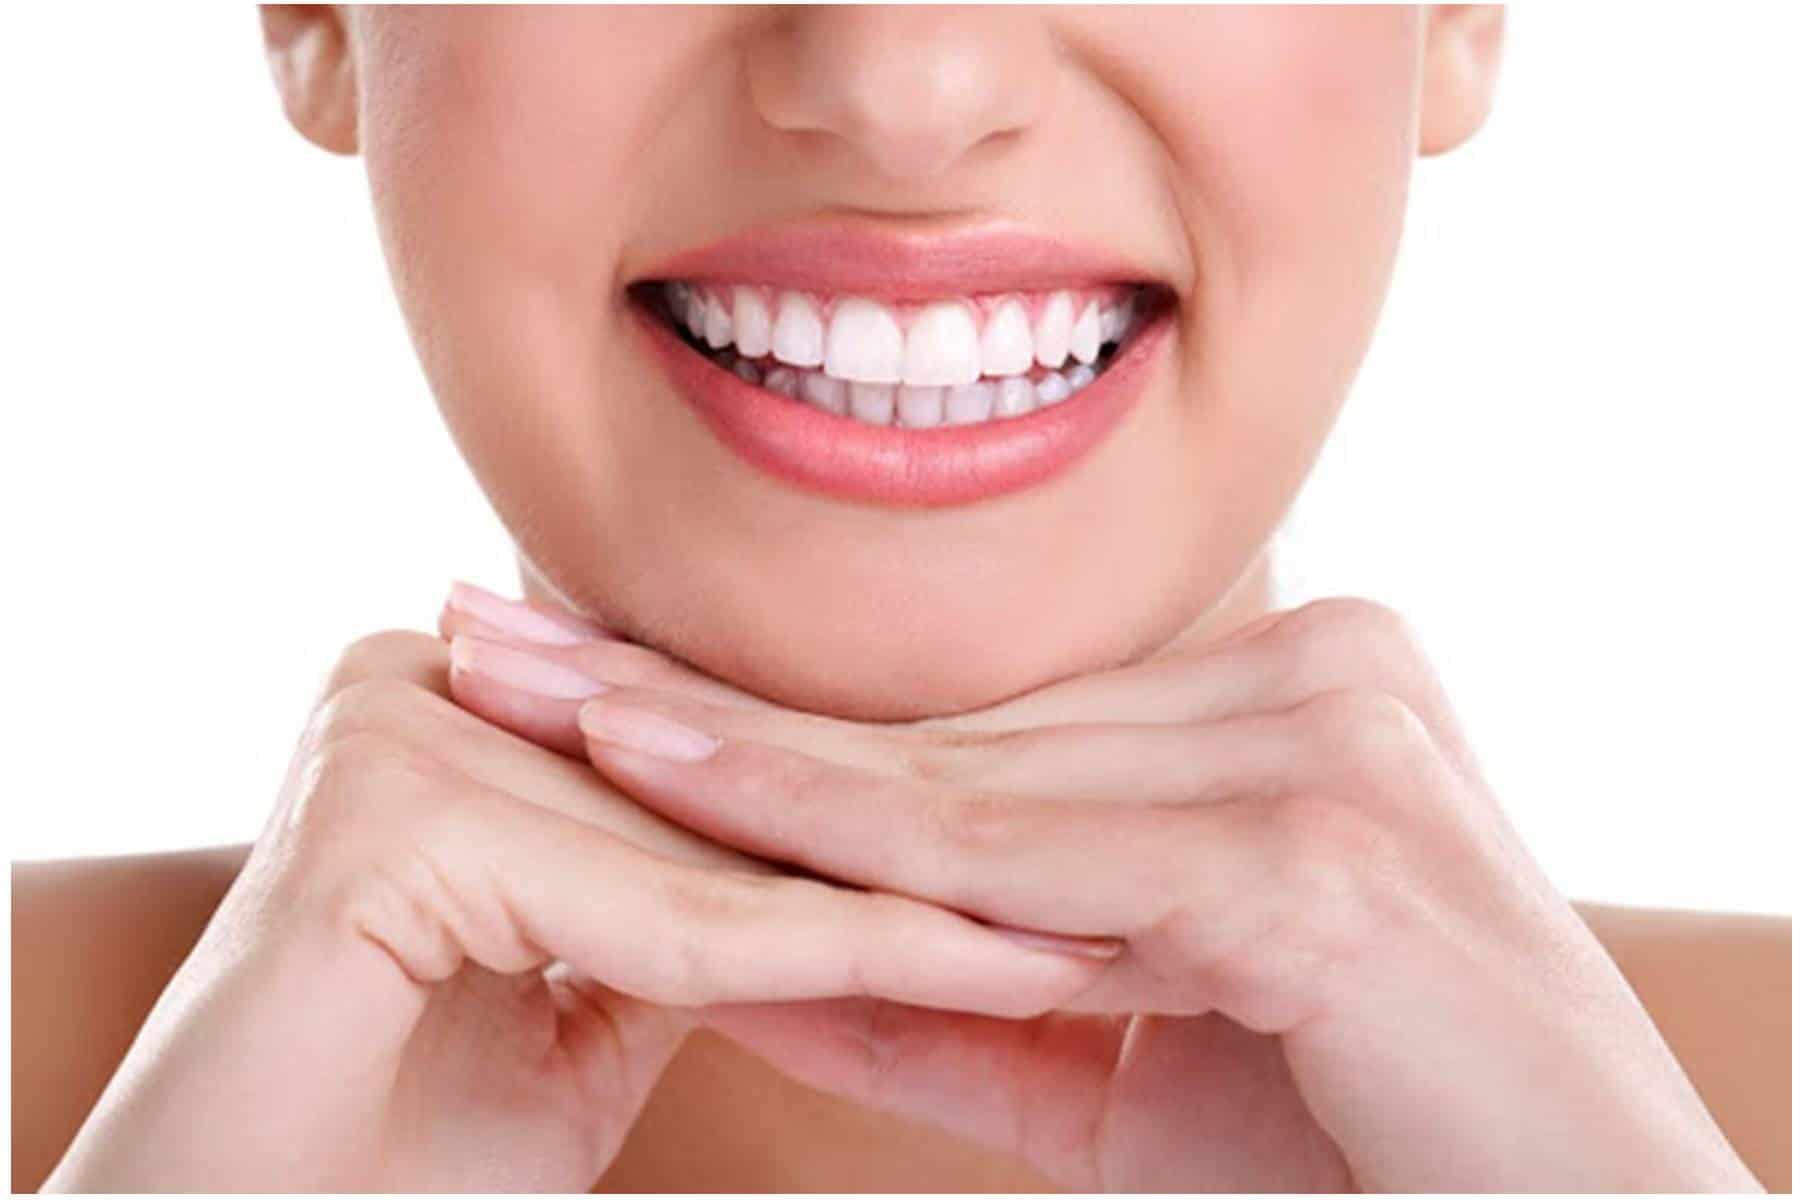 Veja como fazer seus próprios tratamentos naturais para clarear os dentes